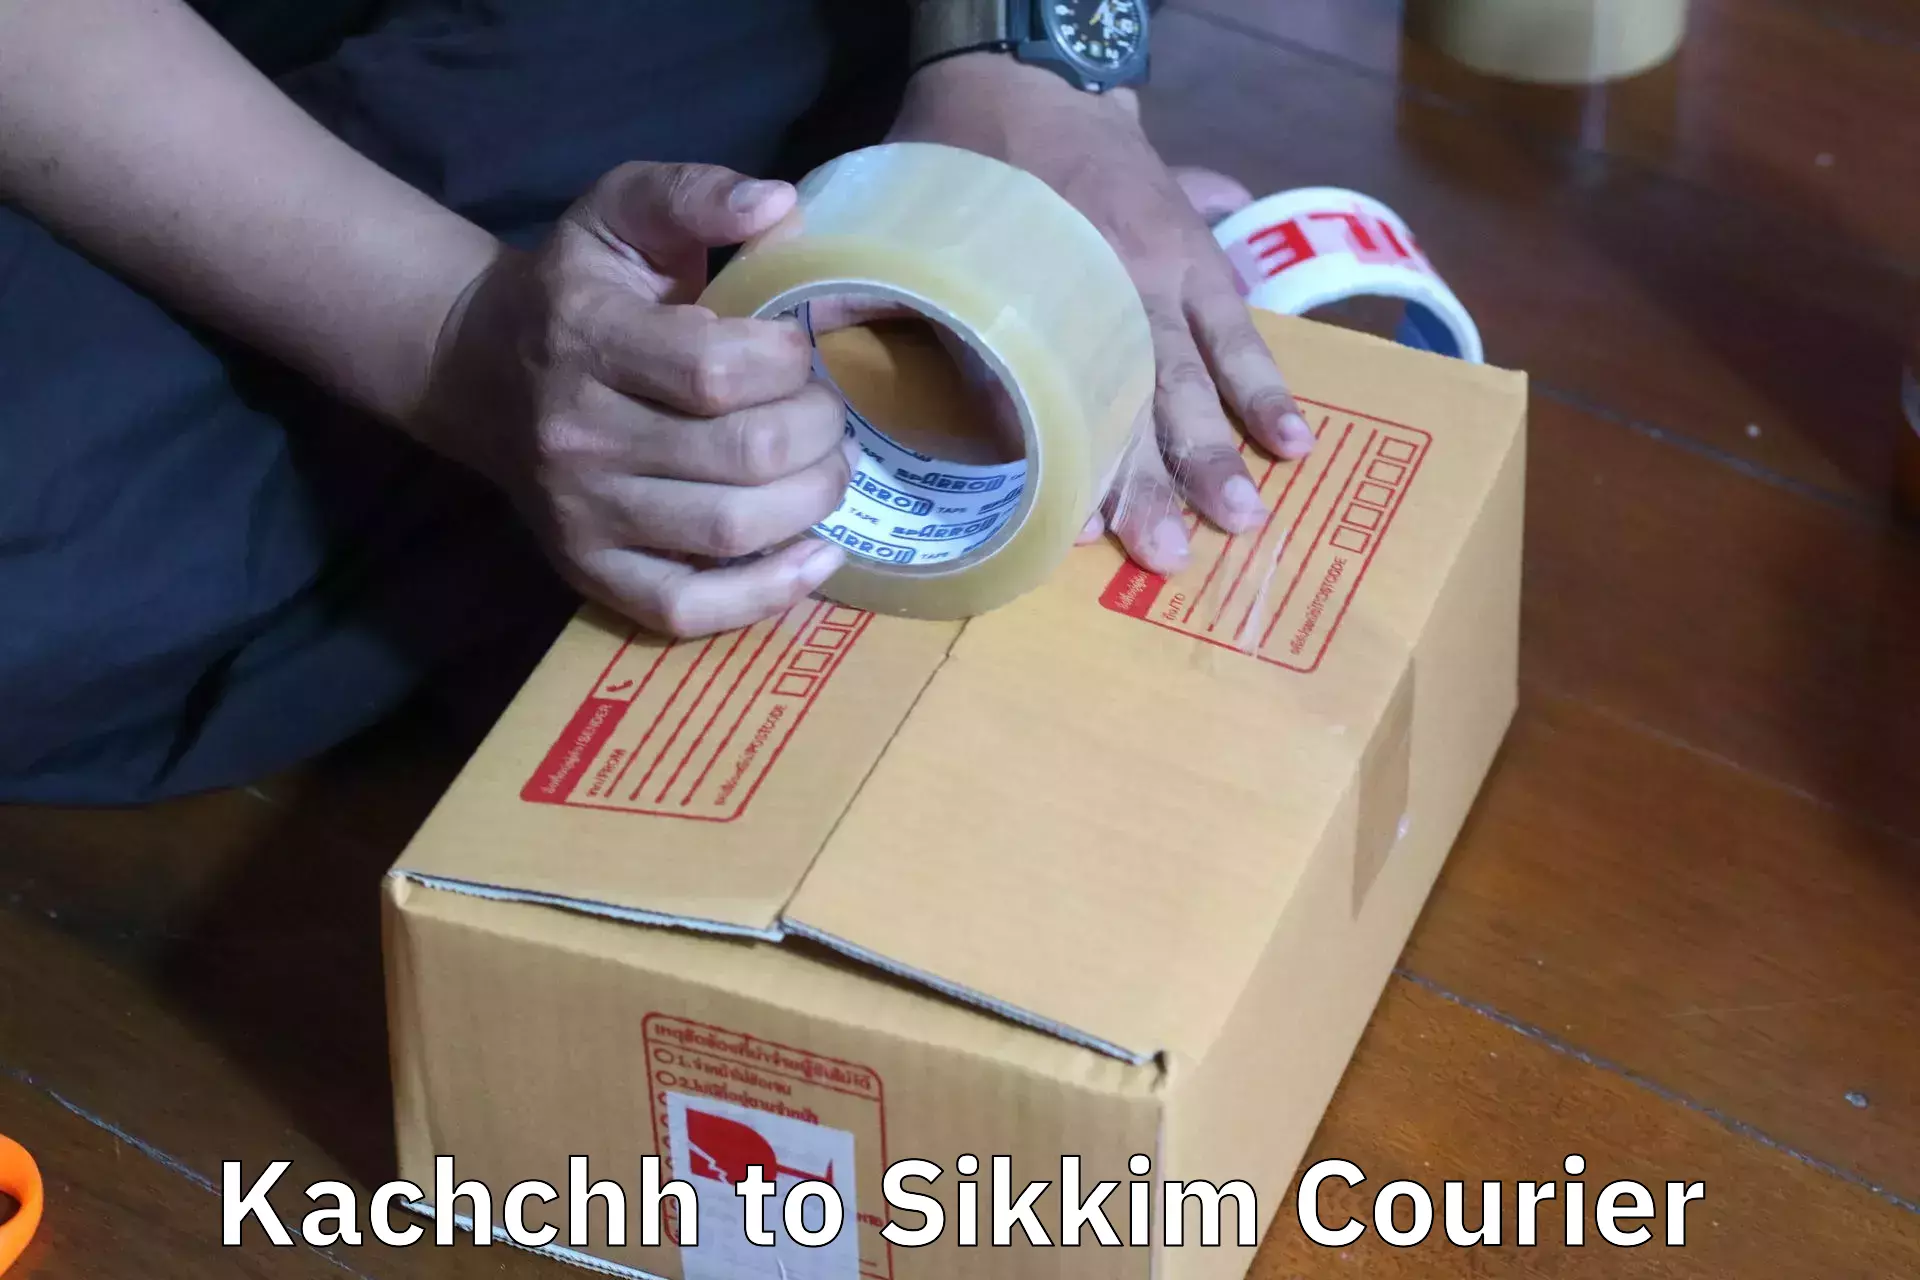 Furniture transport service Kachchh to North Sikkim